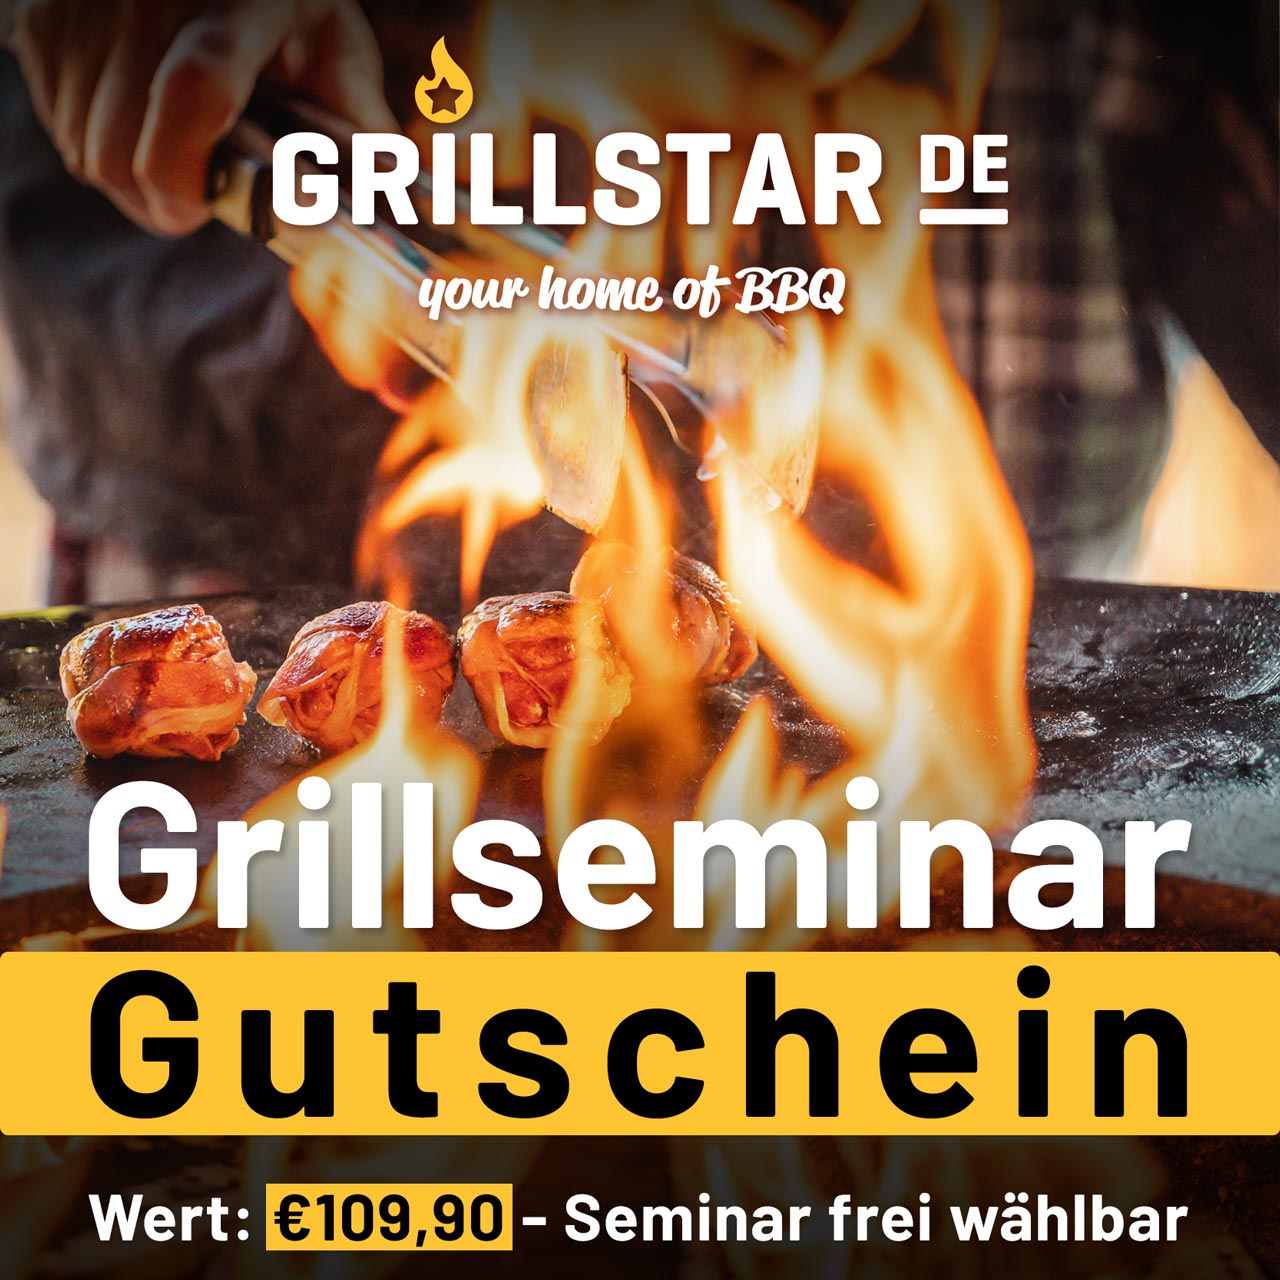 Grillseminar - Gutschein €109,90